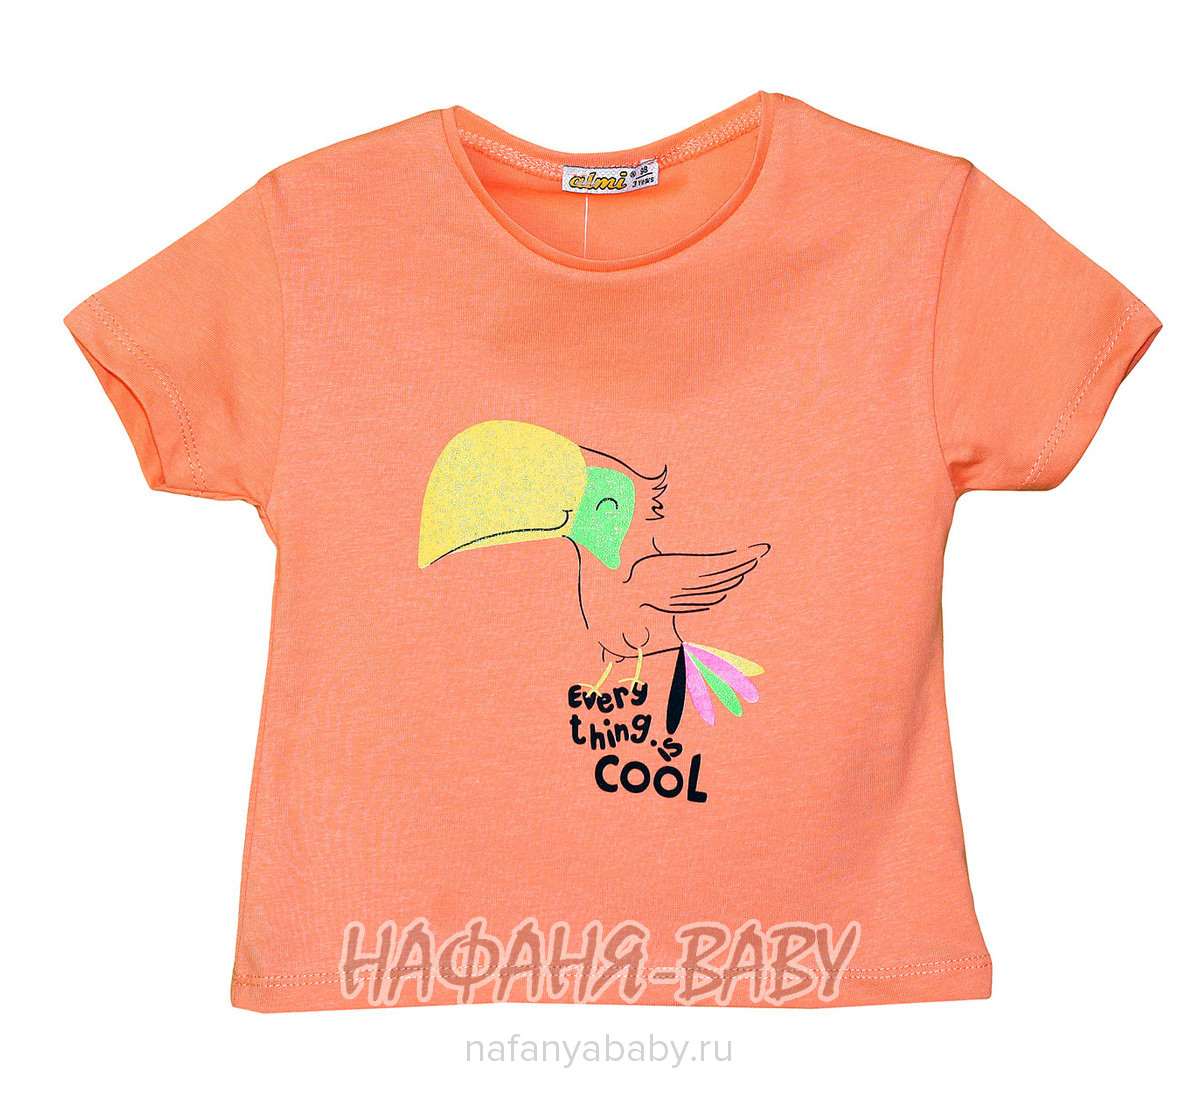 Детская футболка ALMI арт: 622169, 1-4 года, 5-9 лет, цвет персиковый, оптом Турция